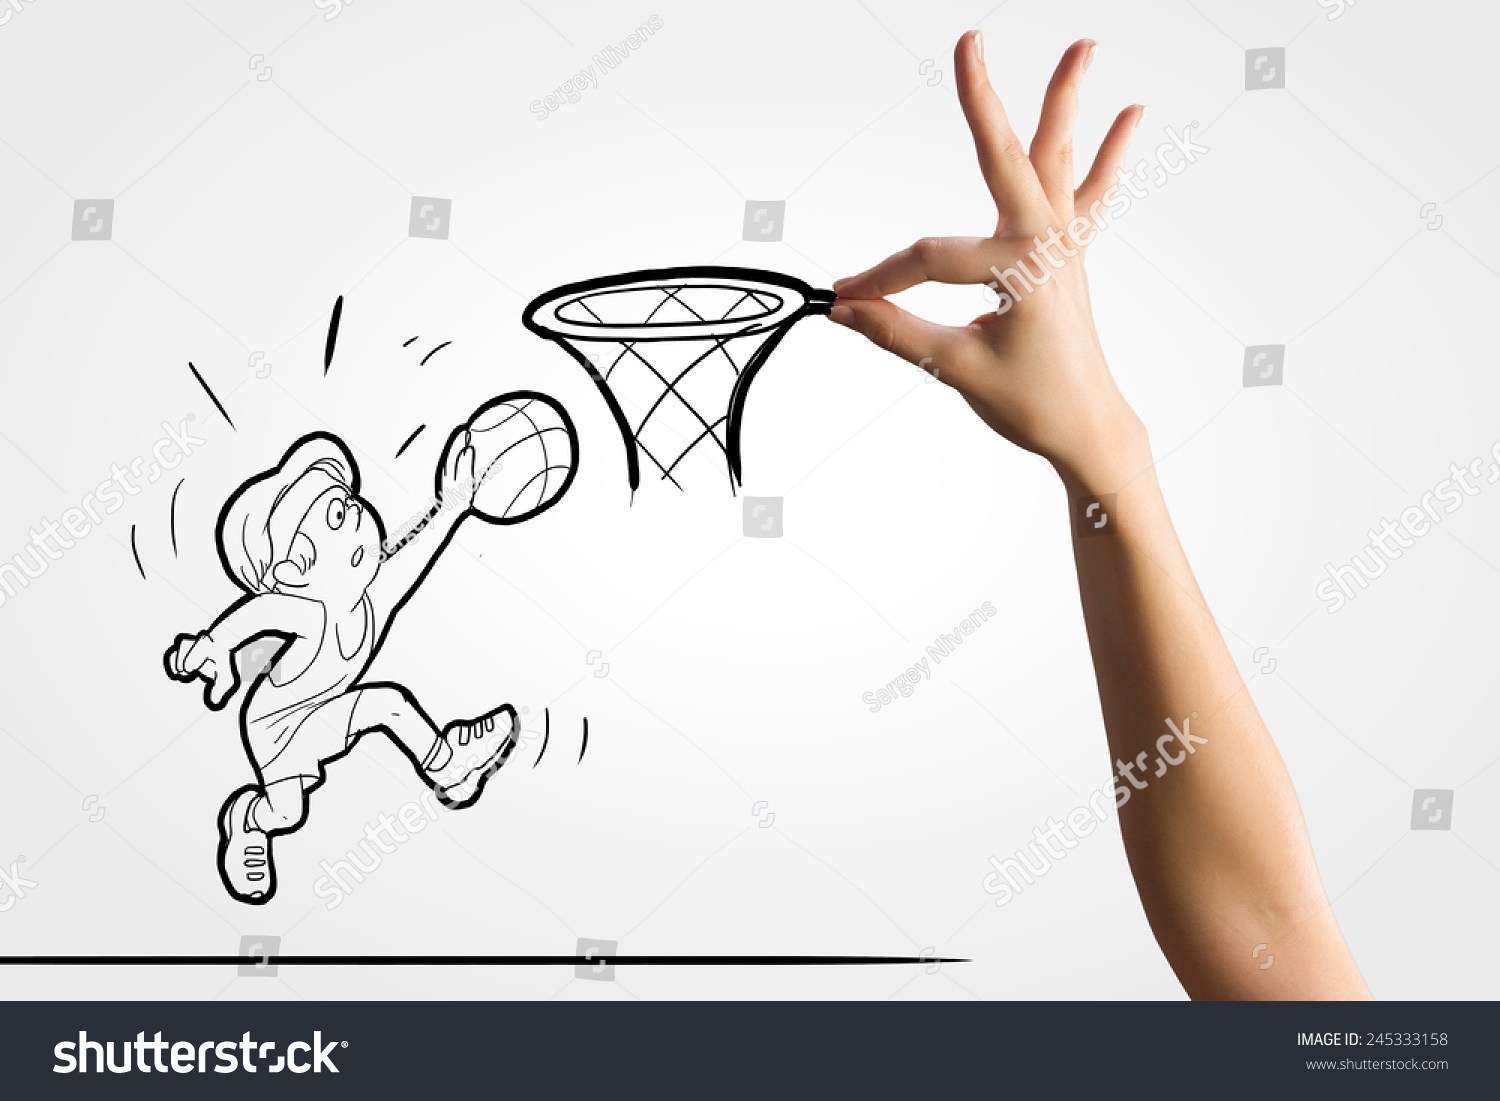 搞笑漫画的篮球运动员把球放在篮子里